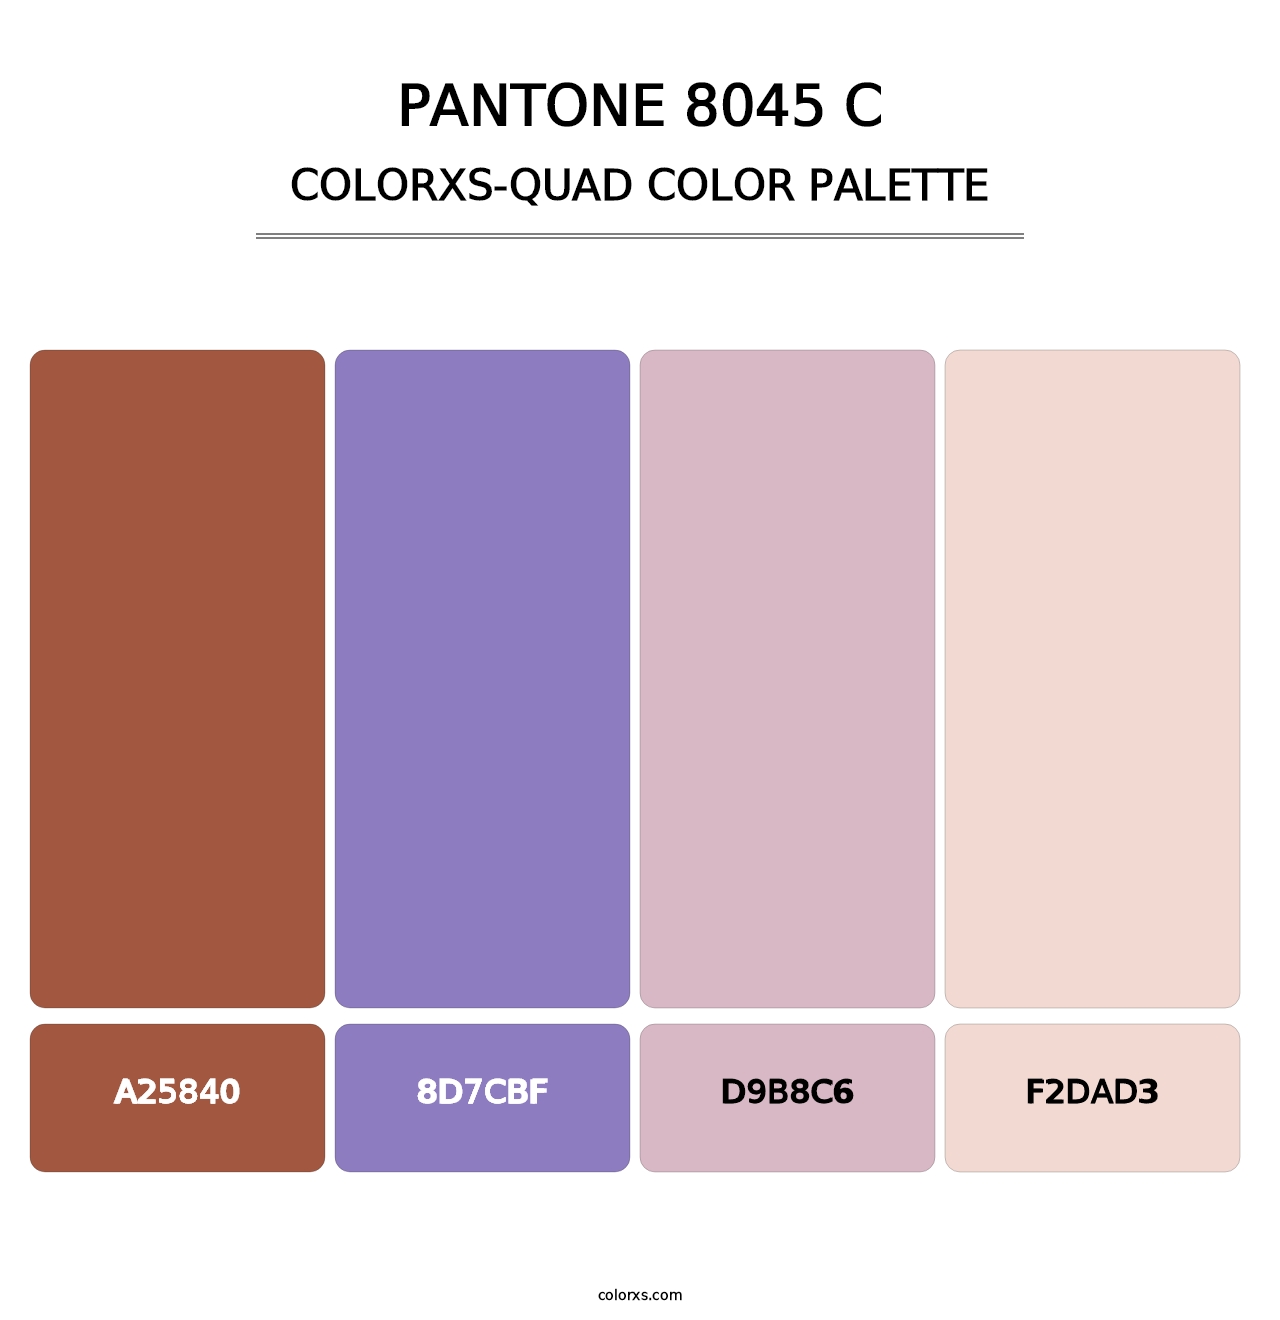 PANTONE 8045 C - Colorxs Quad Palette